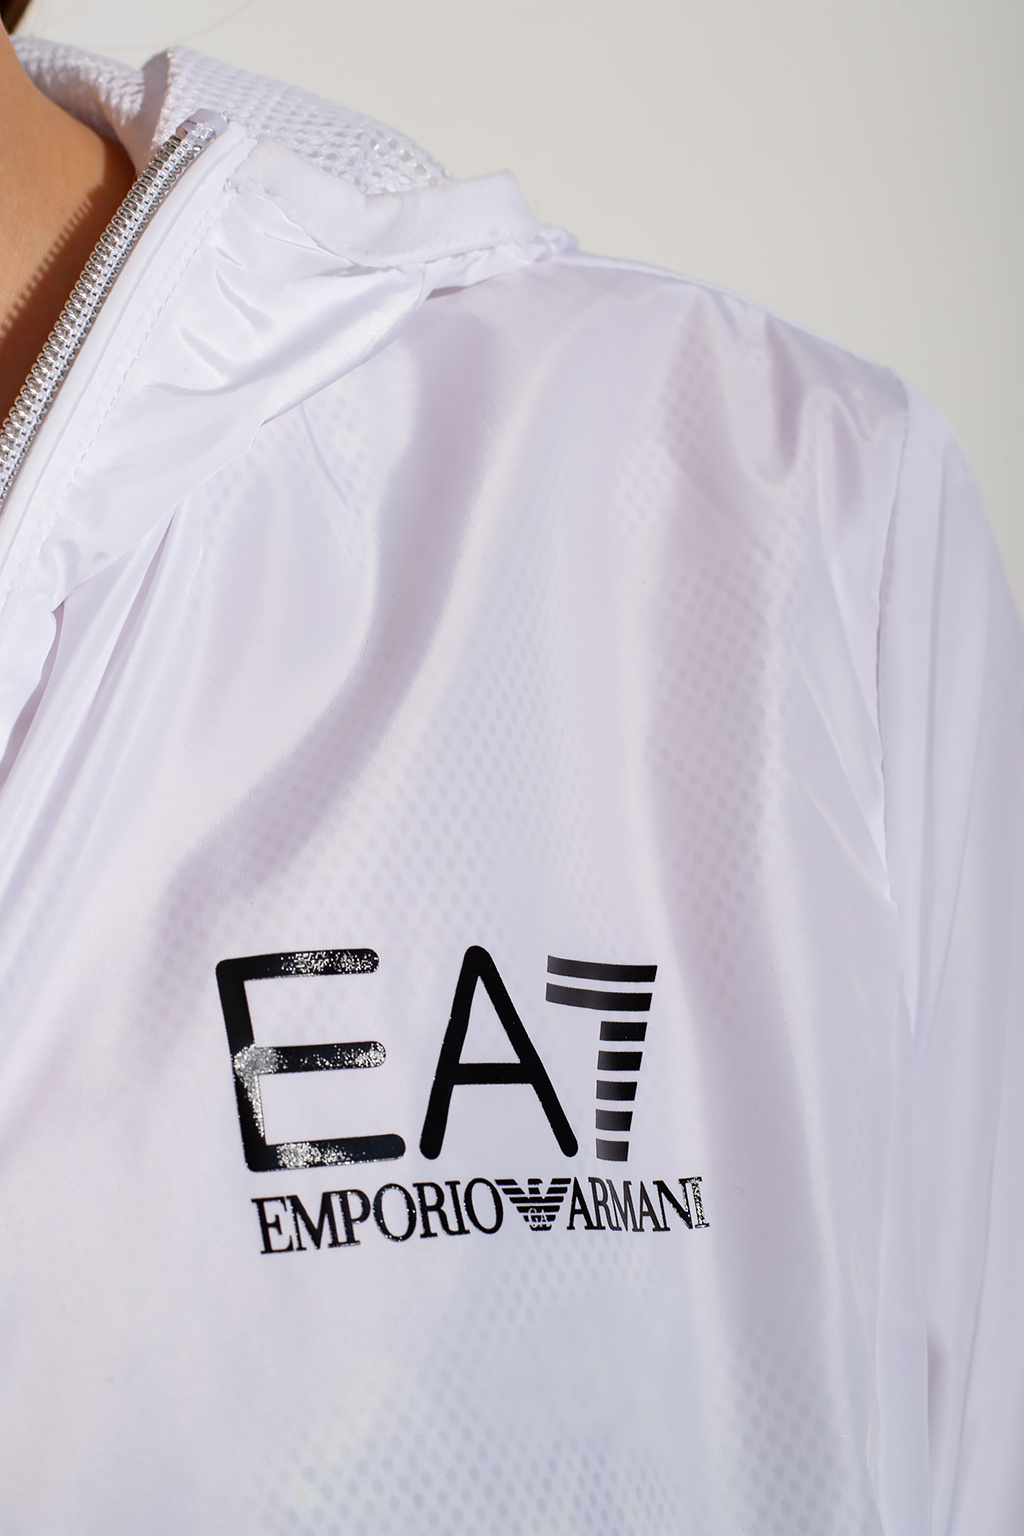 EA7 Emporio Armani Jacket with logo